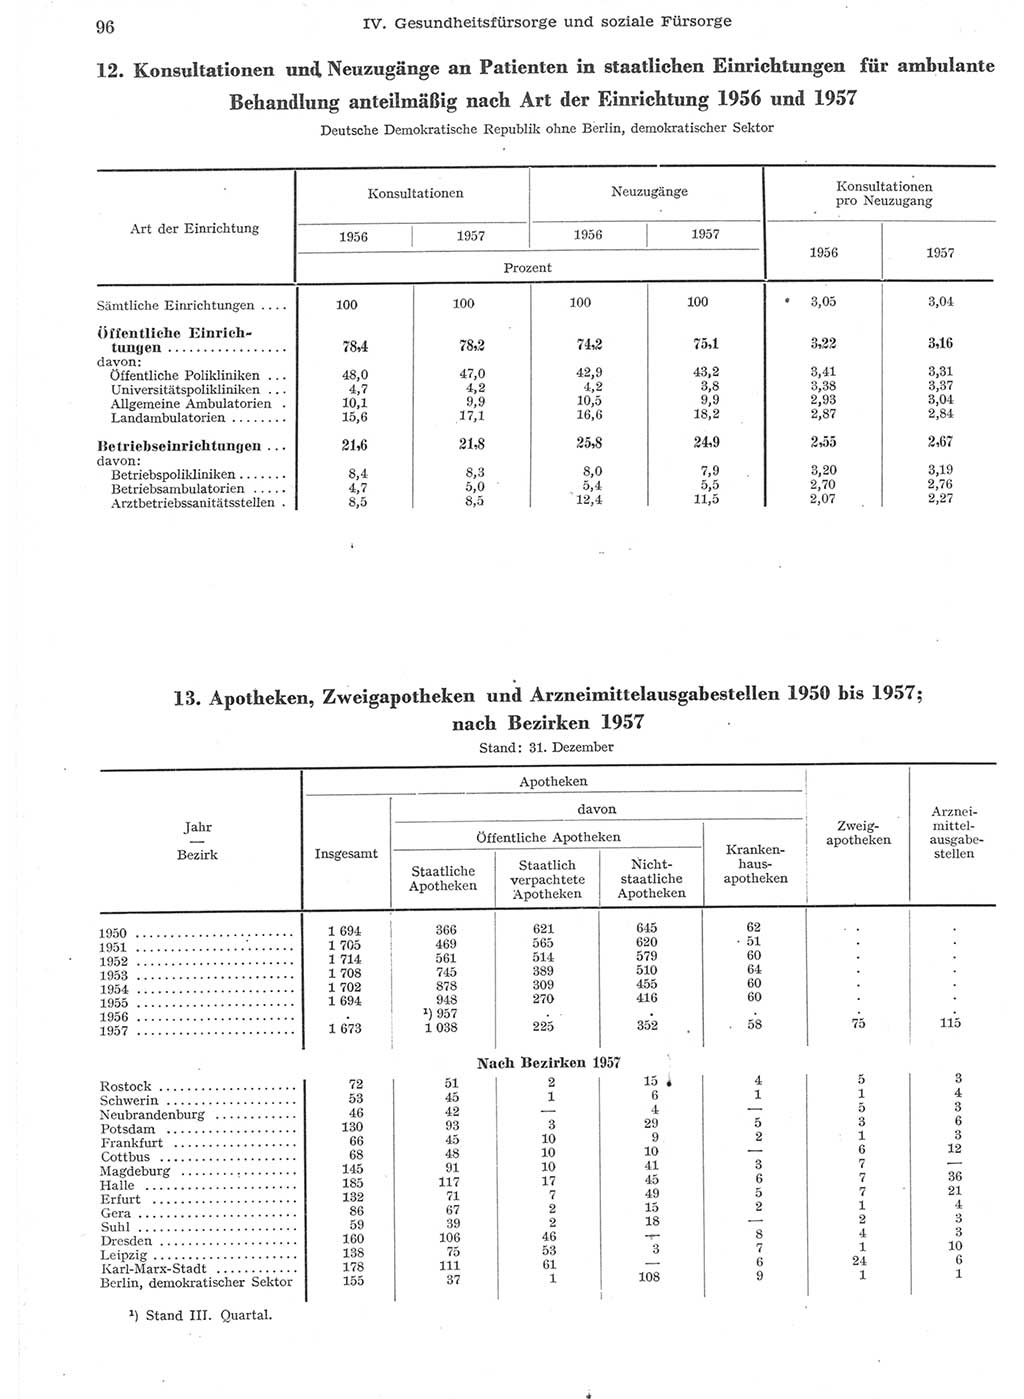 Statistisches Jahrbuch der Deutschen Demokratischen Republik (DDR) 1957, Seite 96 (Stat. Jb. DDR 1957, S. 96)